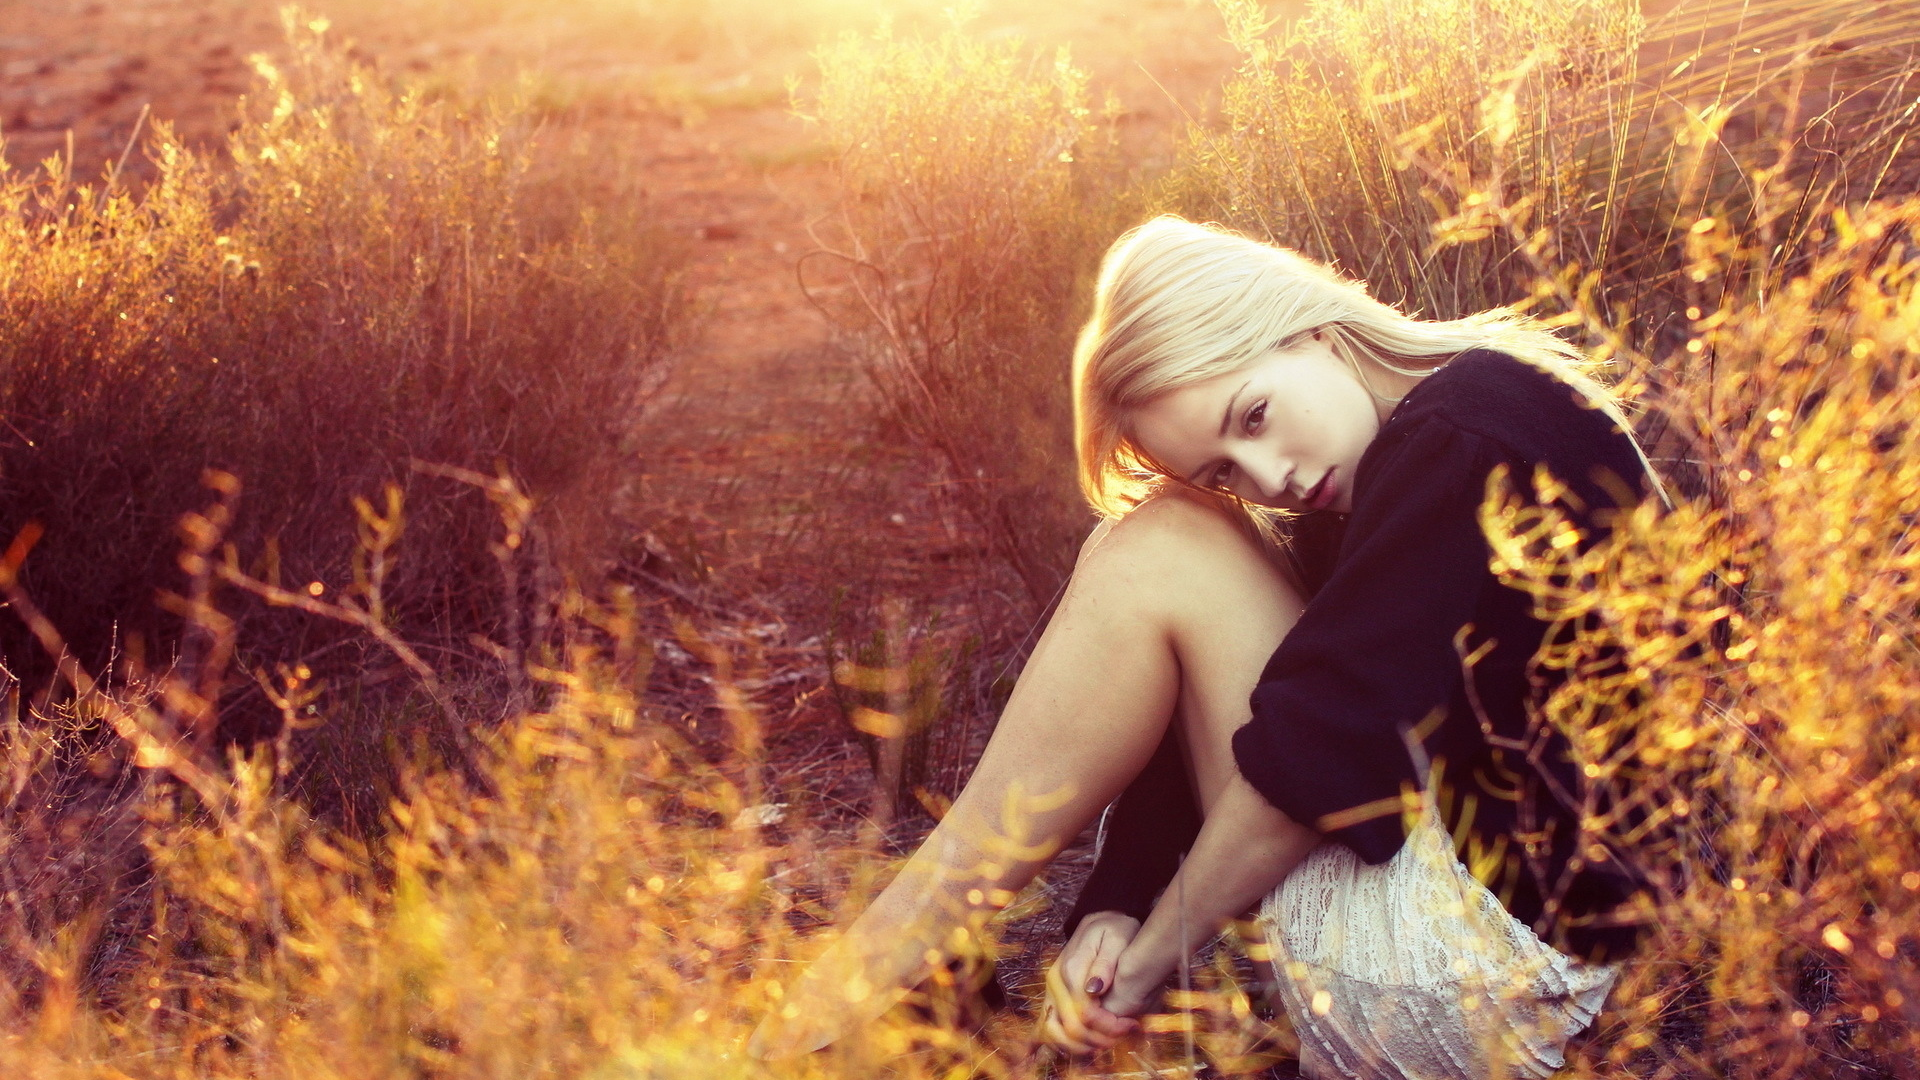 блондинка, красивая, сидит в траве, на природе